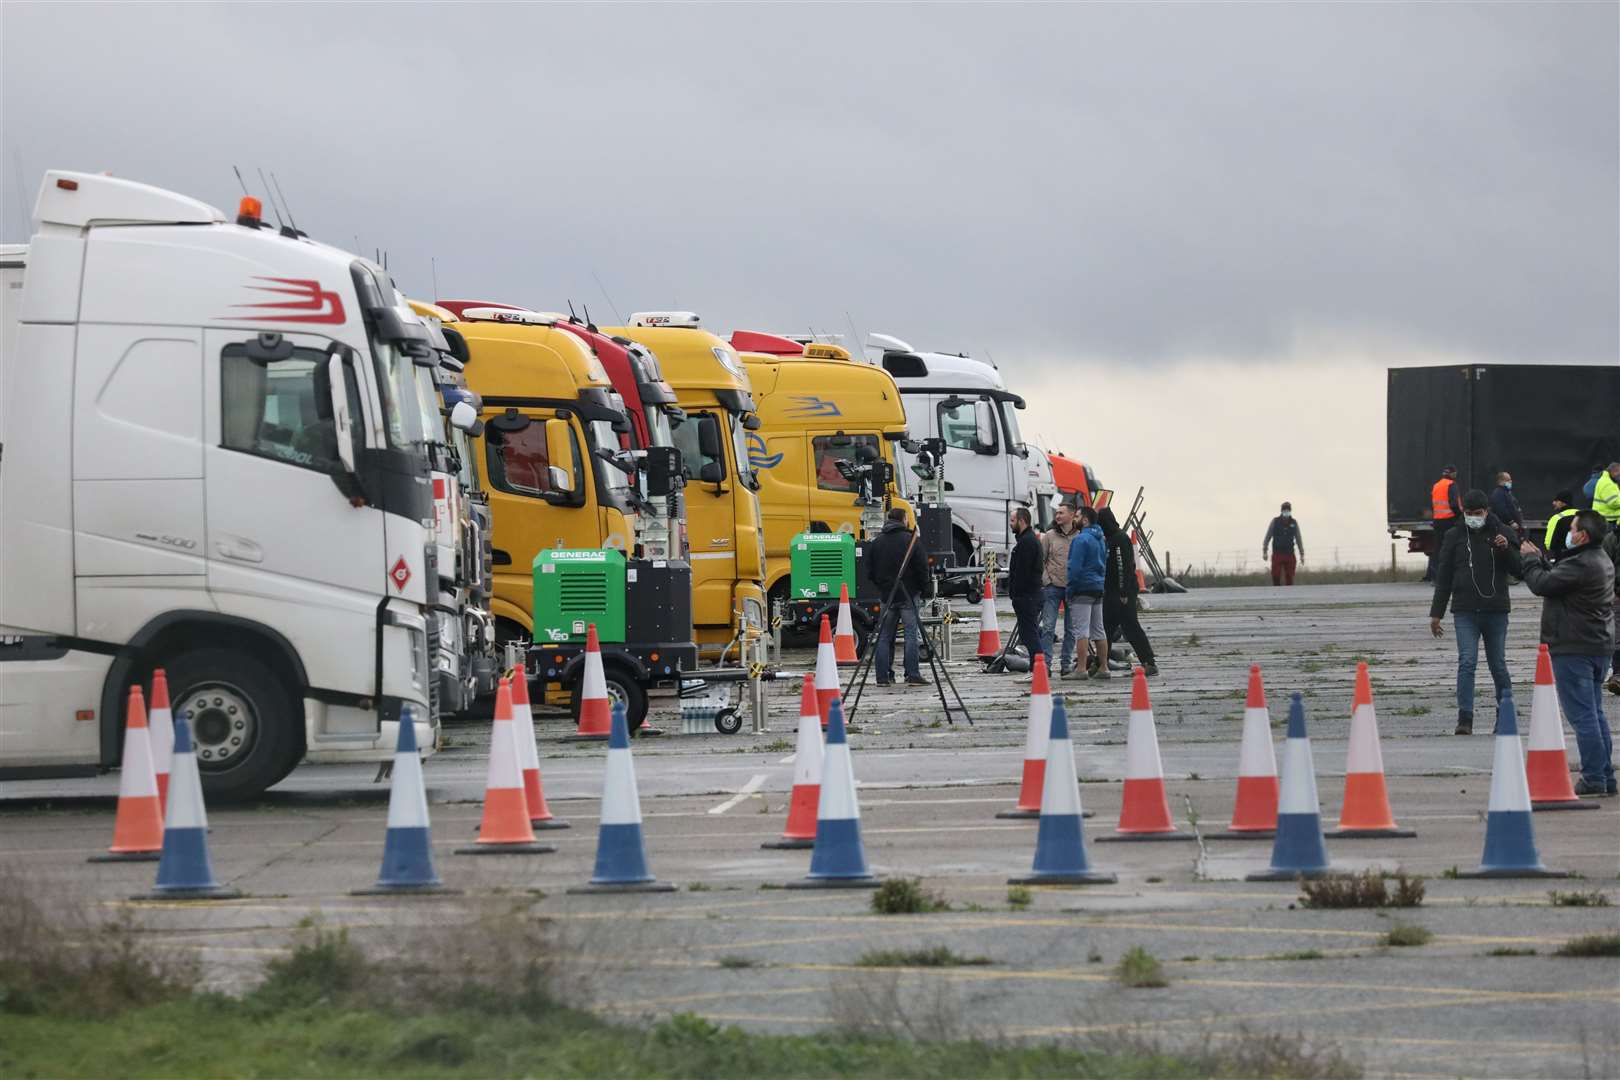 Lorries at Manston Picture: UKNIP